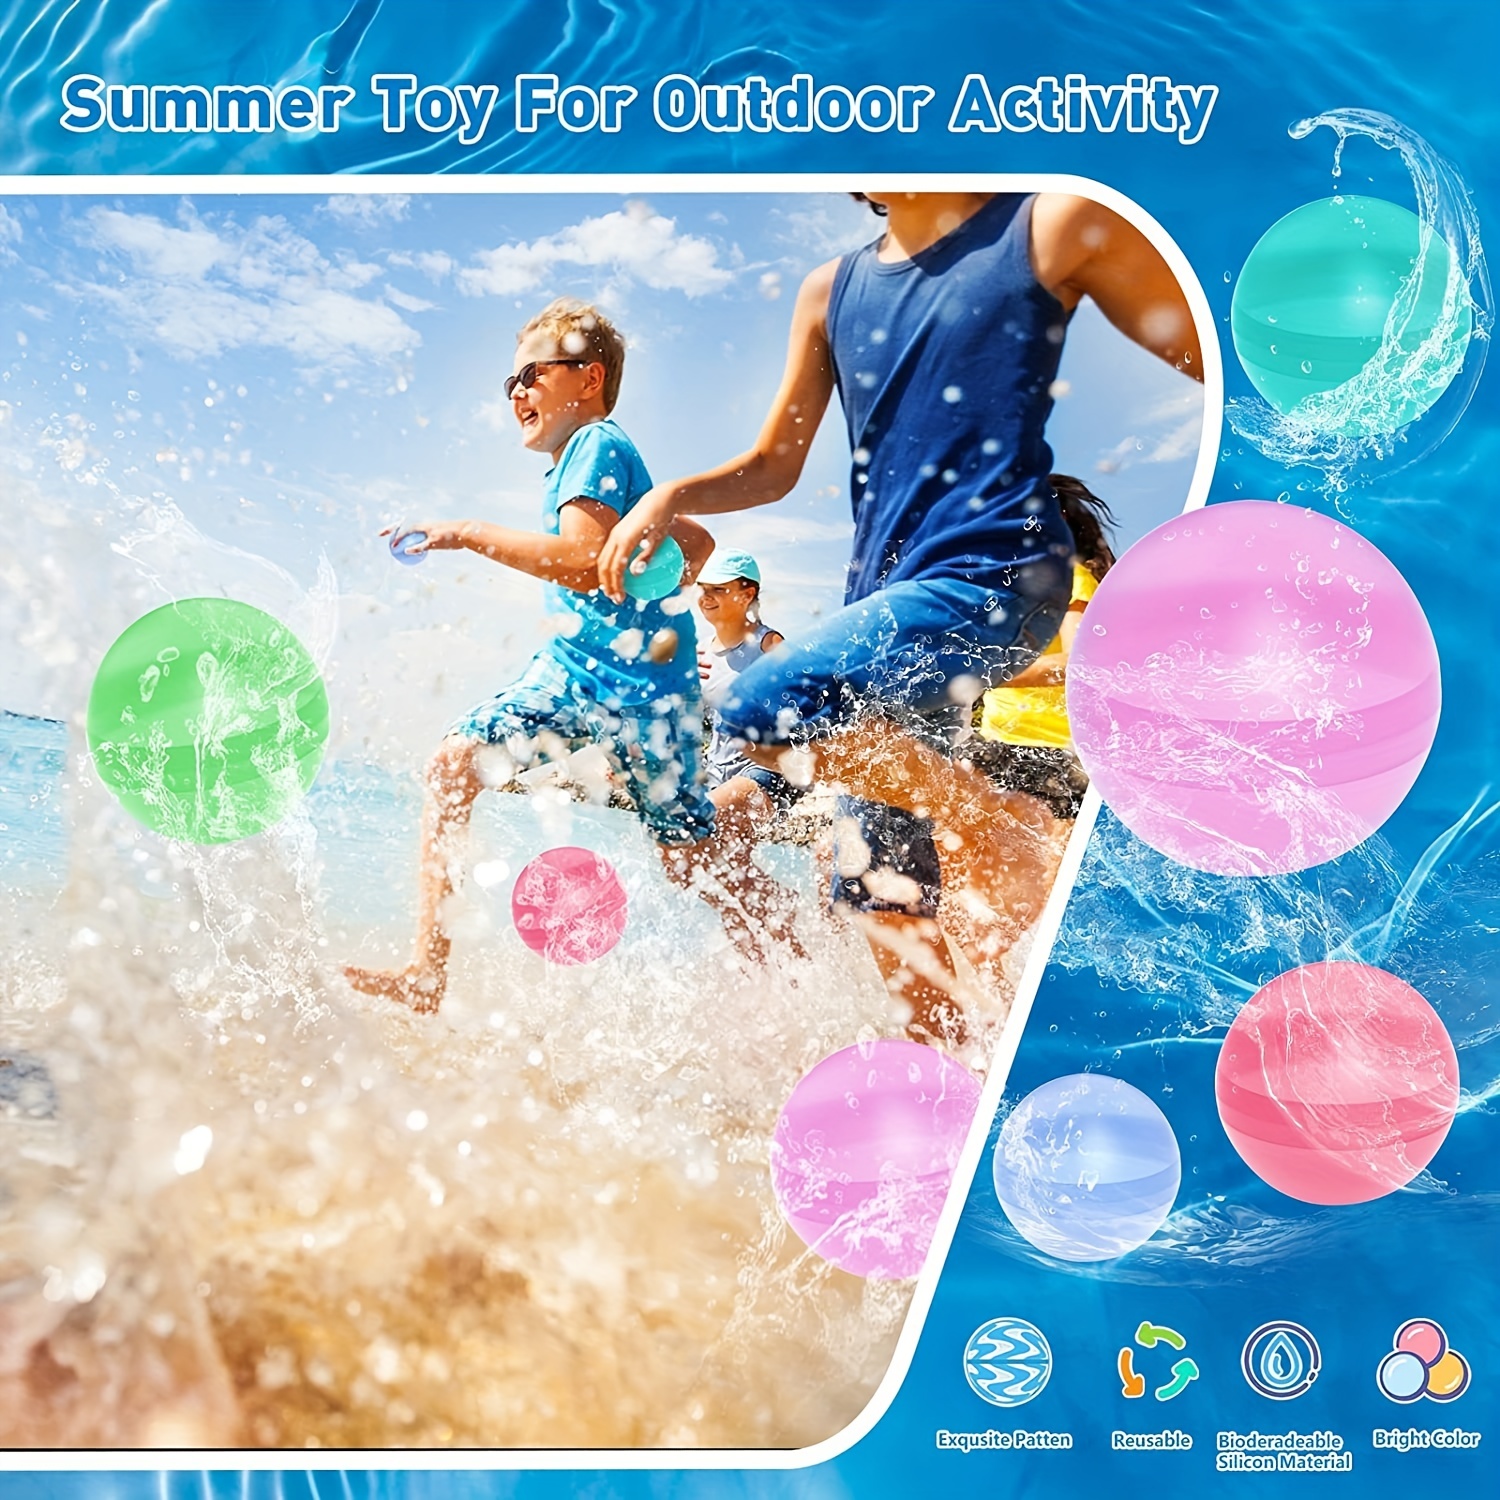 Soppycid 16 Pcs Ballons d’eau Réutilisable Remplissage rapide - Boules  d’eau en silicone auto-scellantes pour les enfants avec sac en filet,  jouets